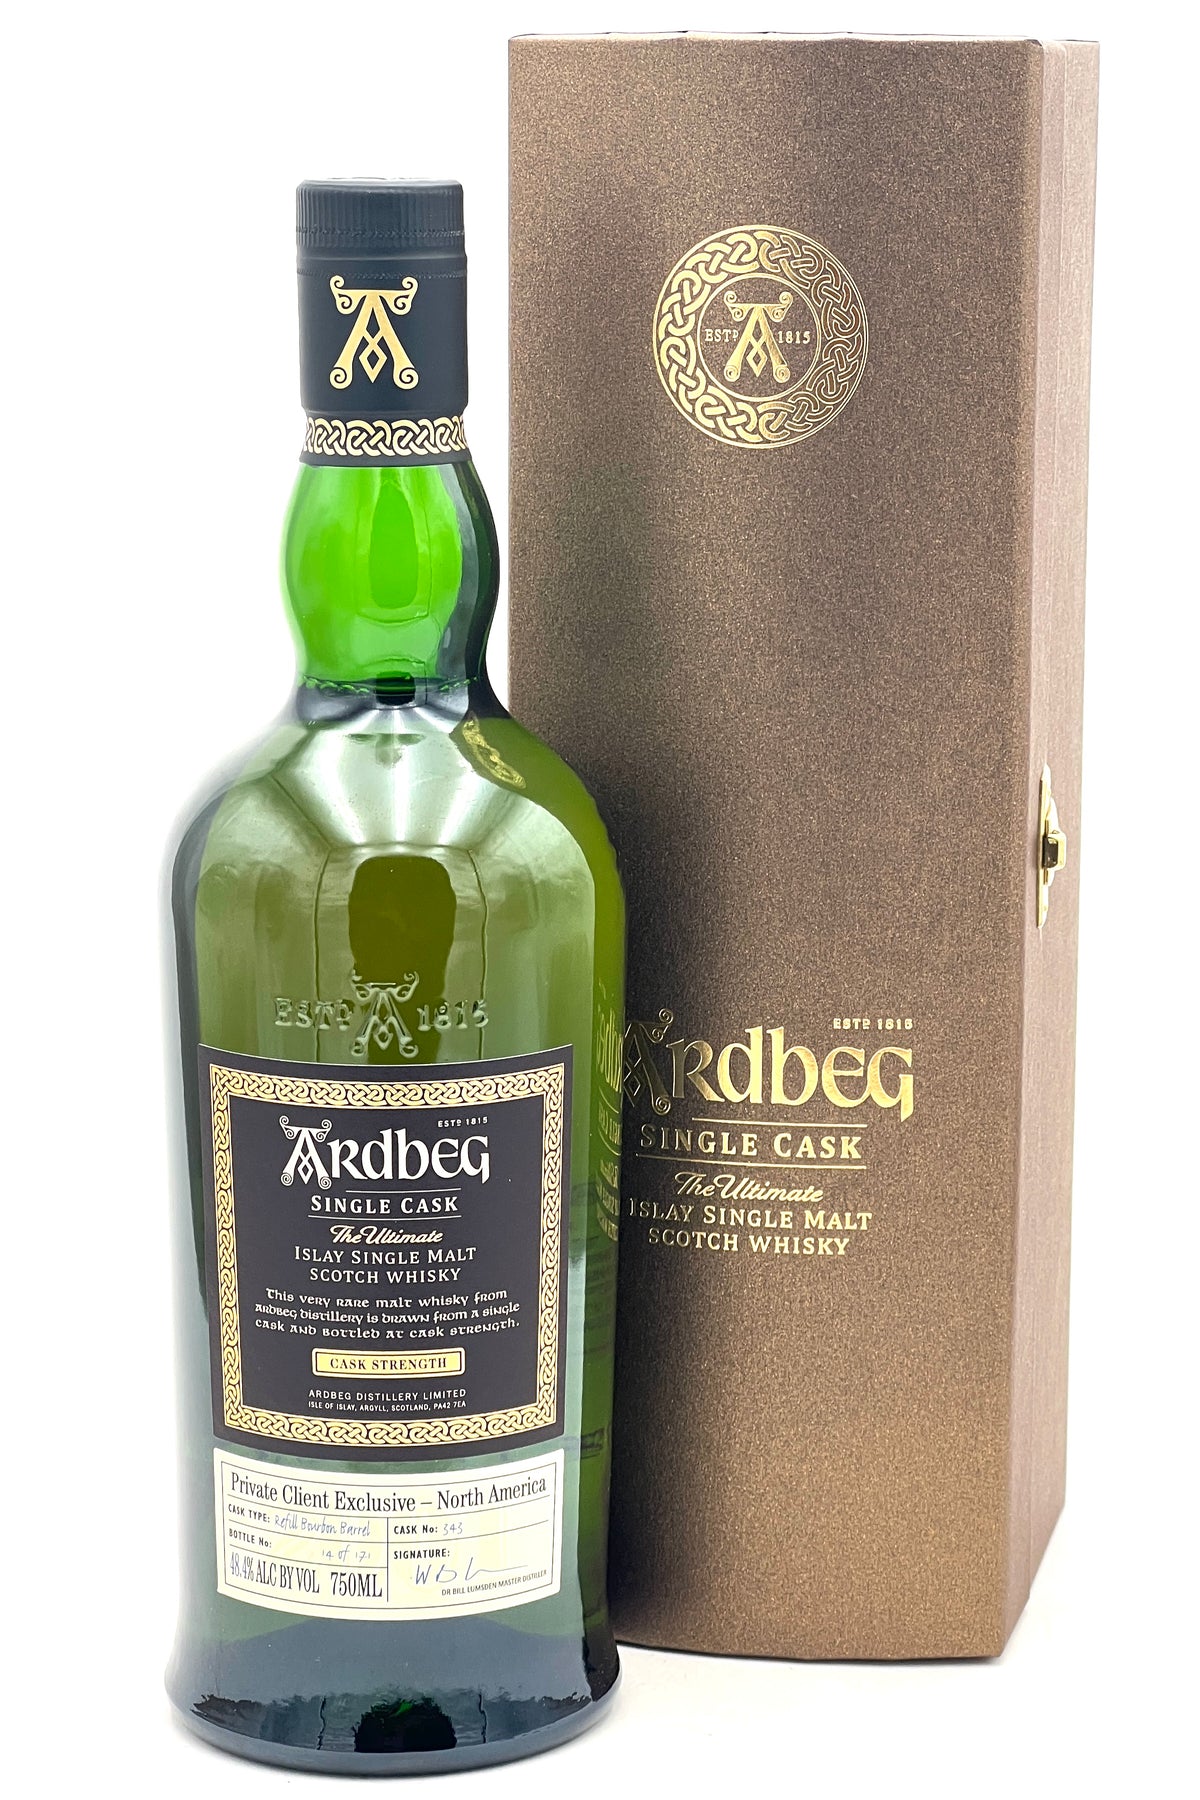 Ardbeg Single Cask #343 The Ultimate Single Malt Scotch Whisky